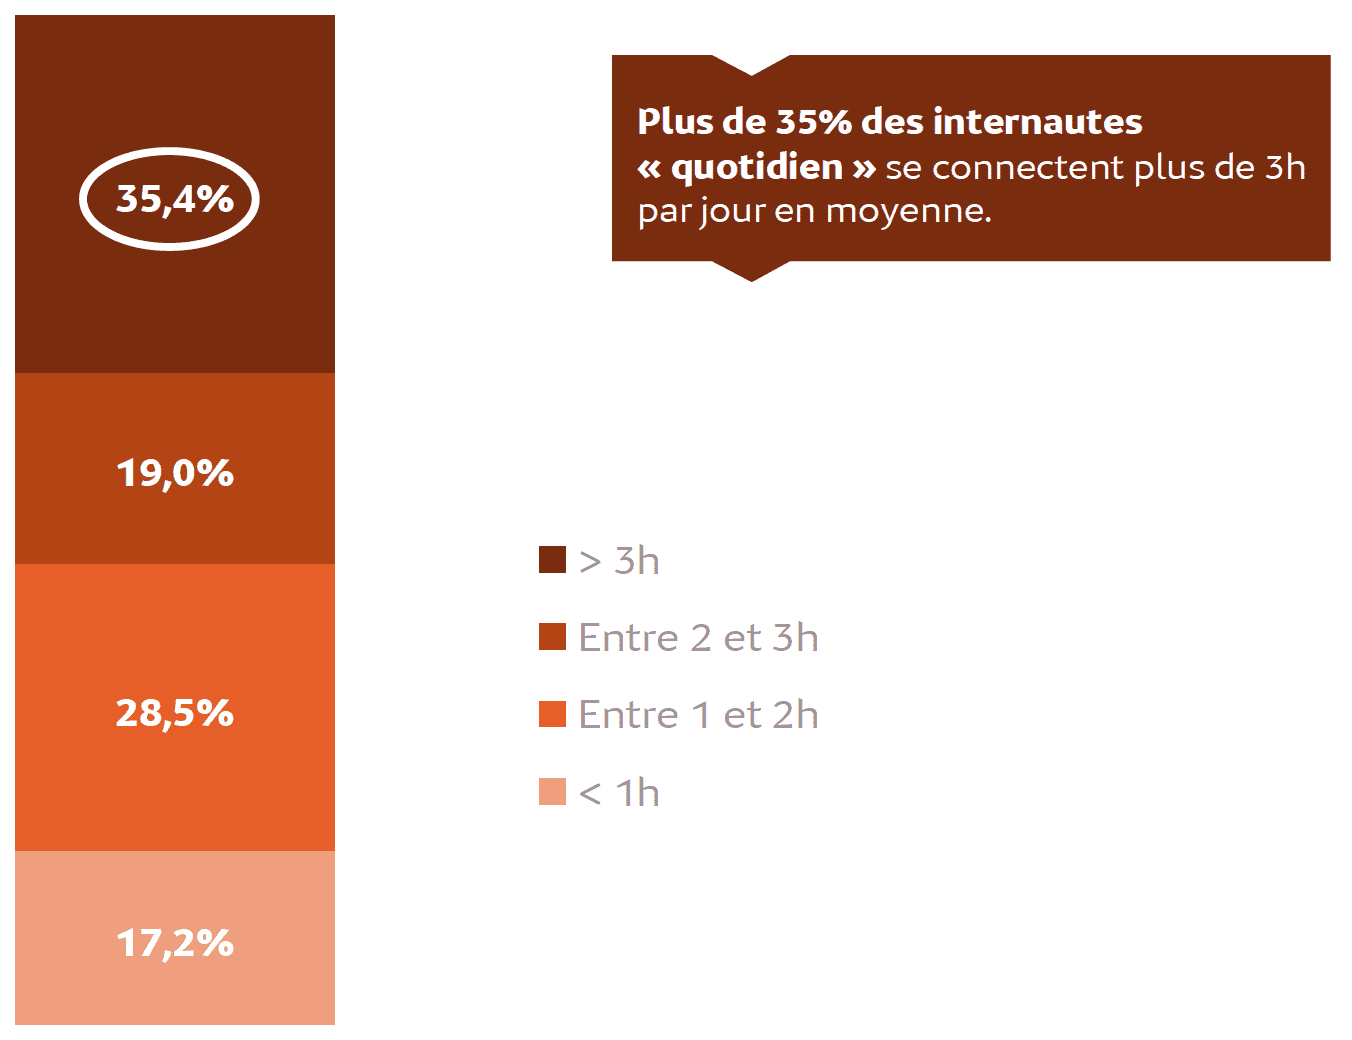 1/3 des martiniquais et guadeloupéens passe en moyenne 3h par jour sur internet